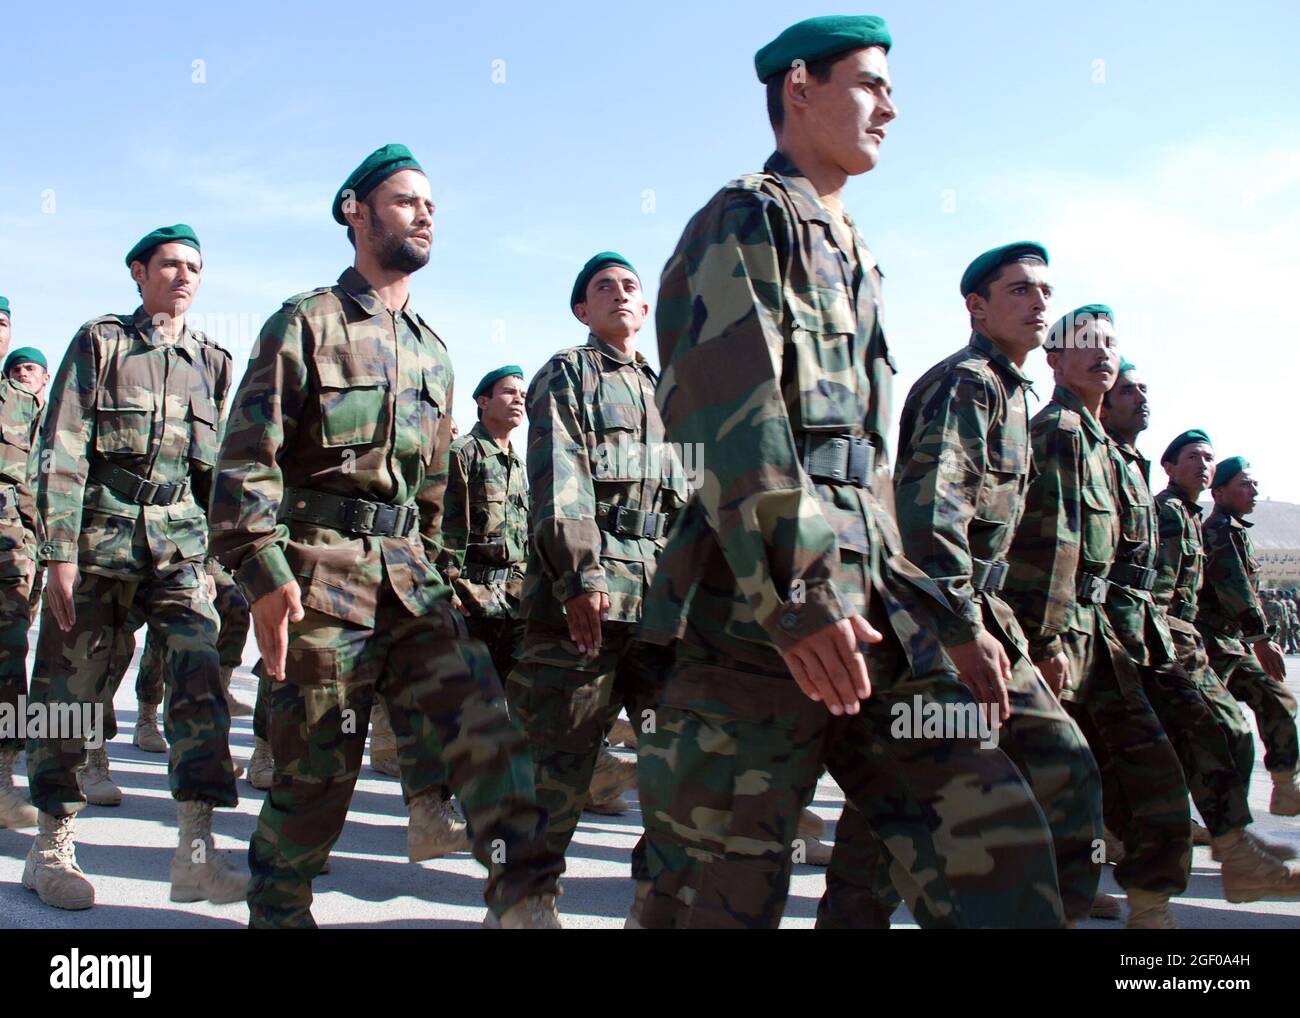 Kabul, Afghanistan – 828 soldati dell'esercito nazionale afghano marciano in formazione durante una cerimonia di laurea al Kabul Military Training Center (KMTC). I soldati afghani hanno completato la loro formazione di base e si schiereranno in tutto il paese a sostegno della difesa nazionale afghana. In un dato giorno 10,000 reclute sono addestrati presso KMTC e Stati Uniti e NATO membri di servizio e appaltatori fornire mentorship e formazione al KMTC. Foto del Dipartimento della Difesa degli Stati Uniti di Lt. CDR. John Gay Foto Stock